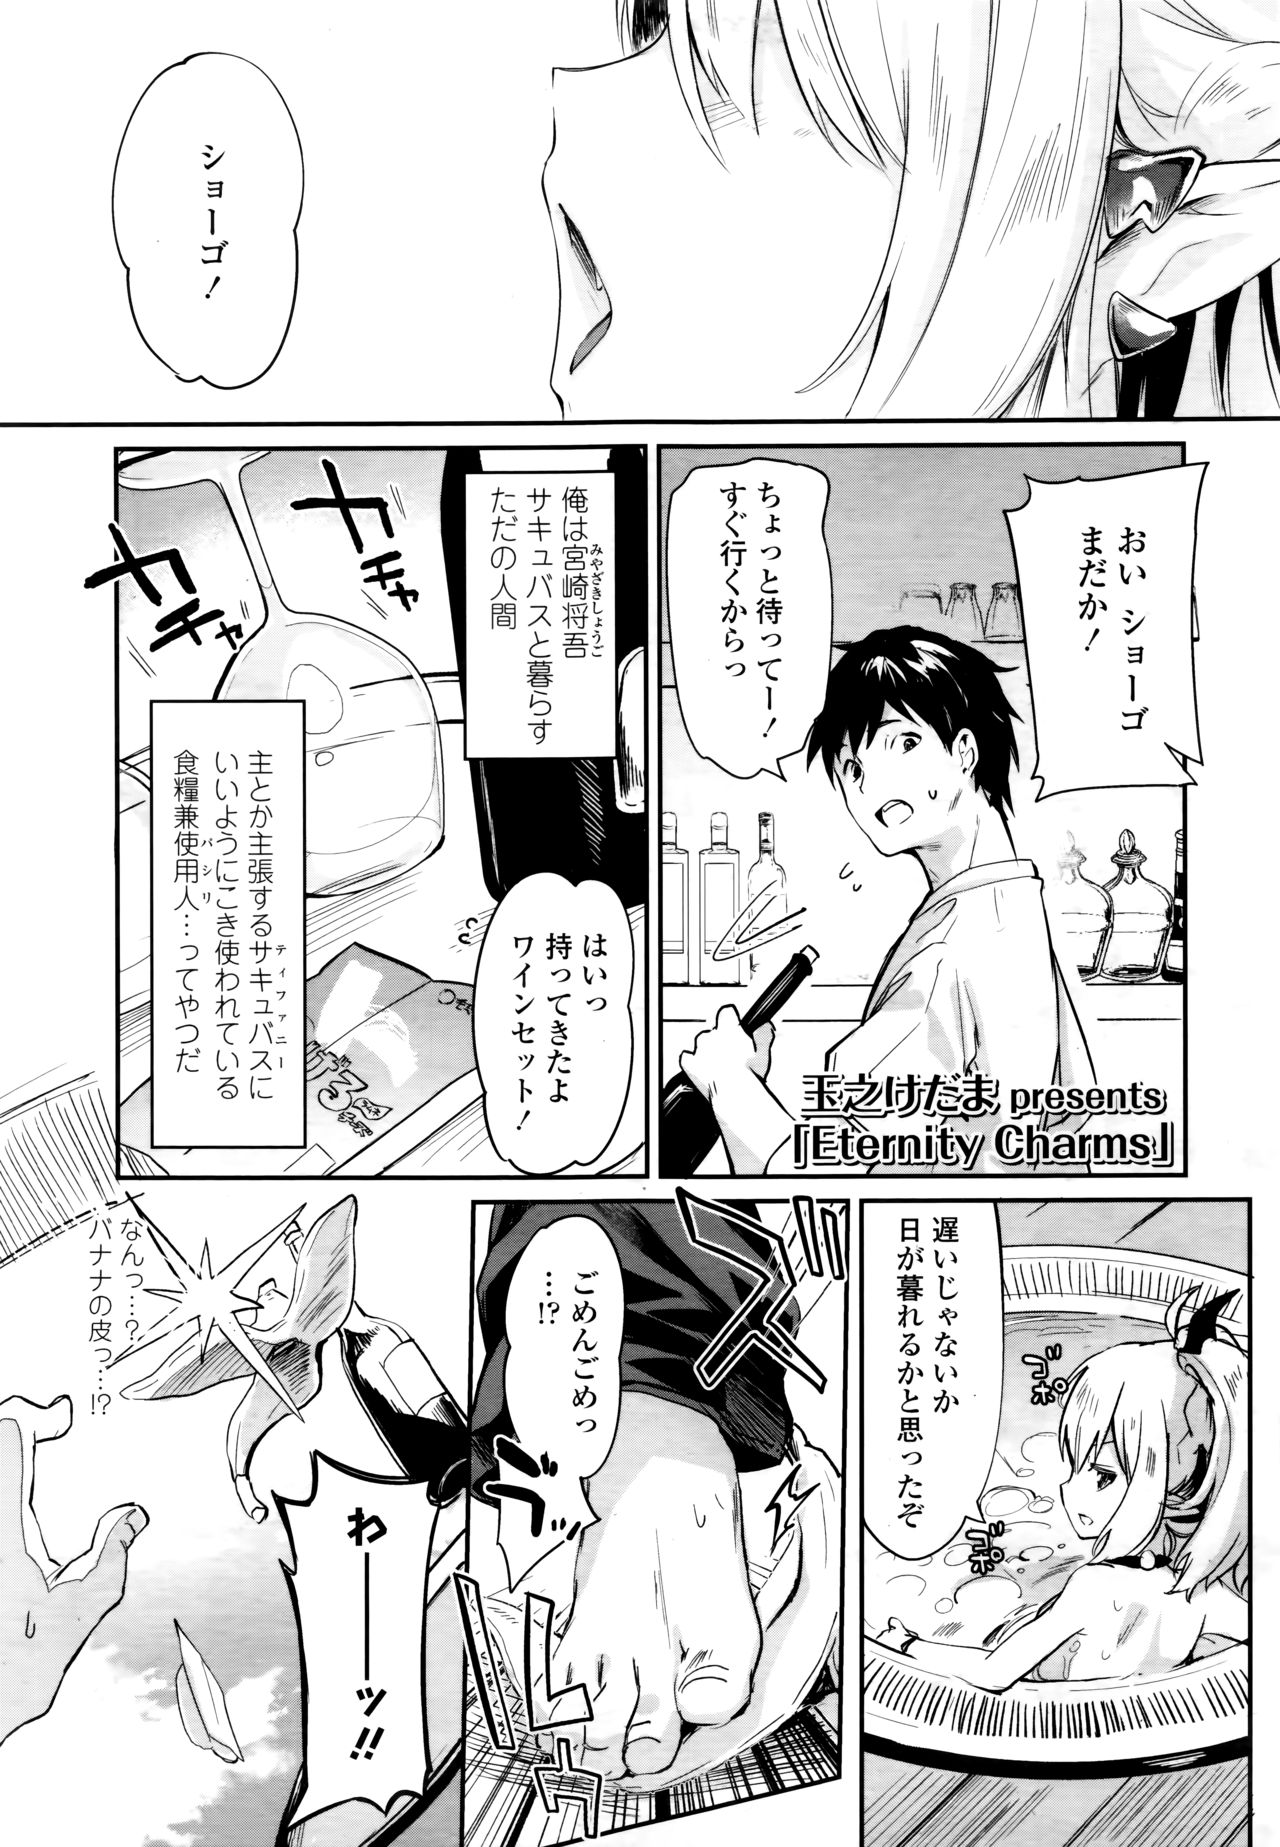 Towako 6 page 9 full